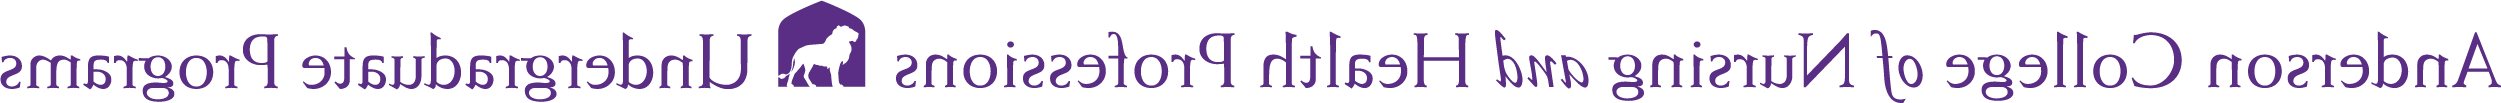 Acon-hp本科logo